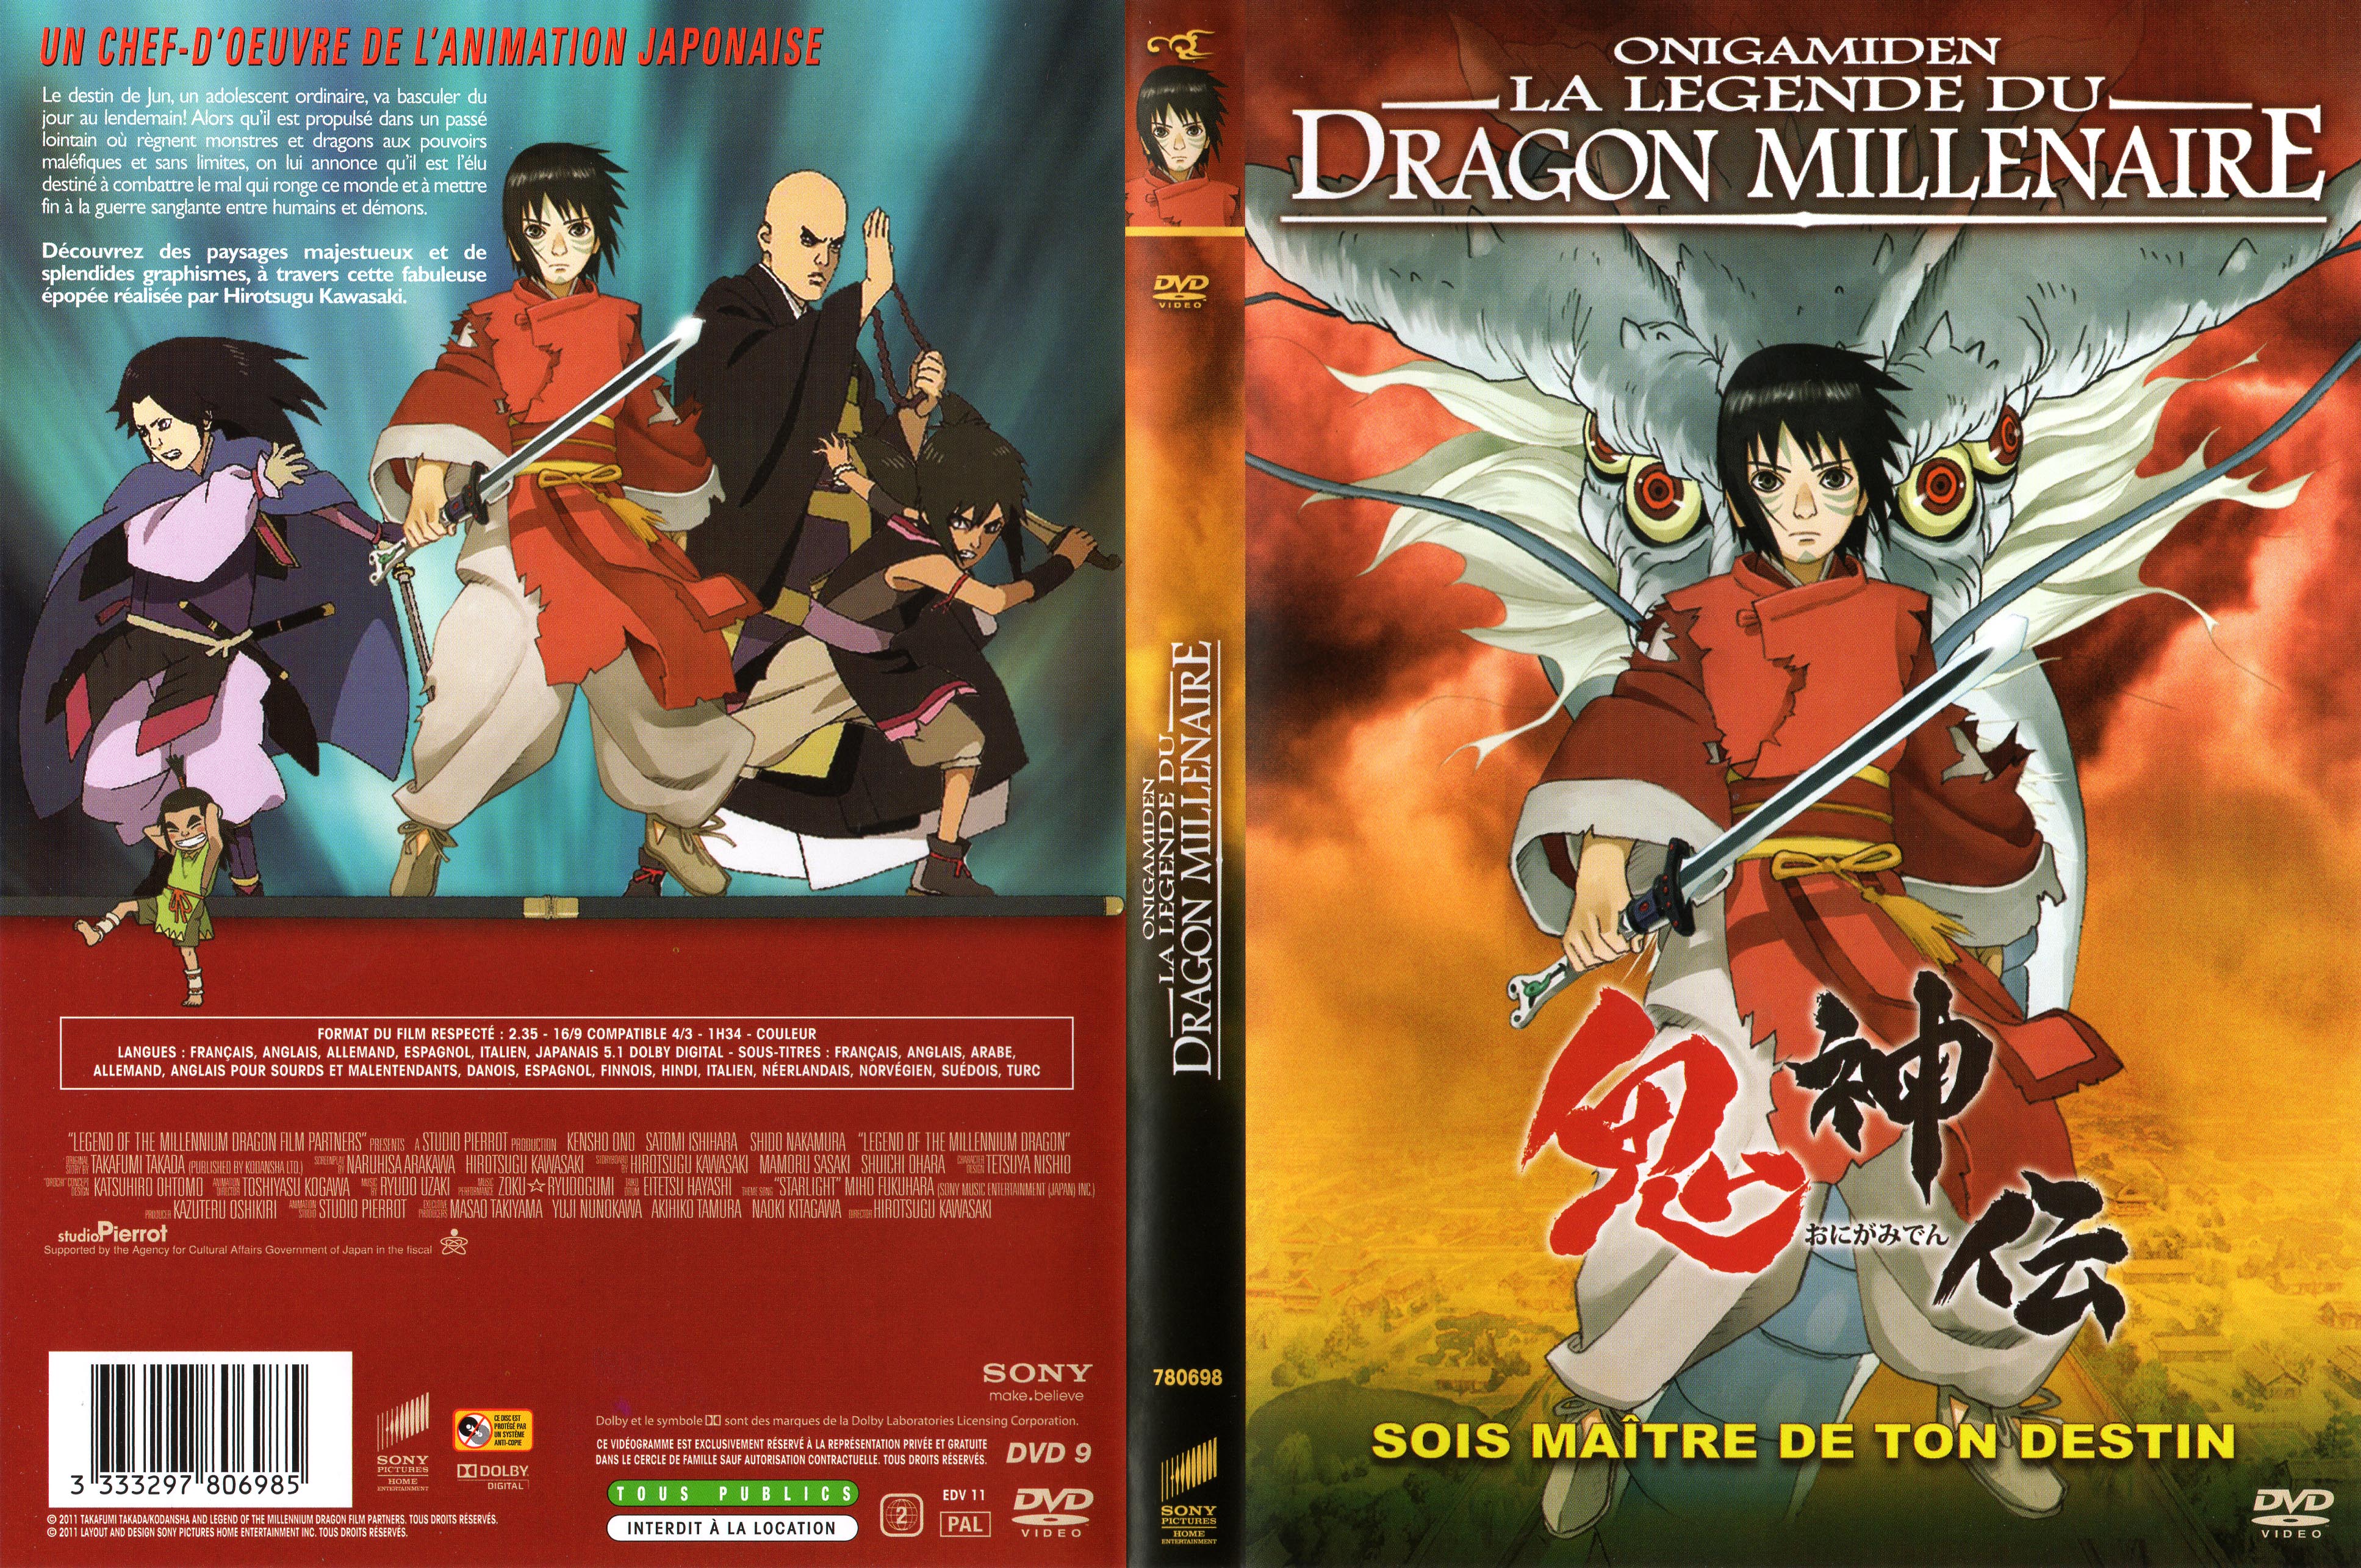 Jaquette DVD Onigamiden la legende du dragon millenaire